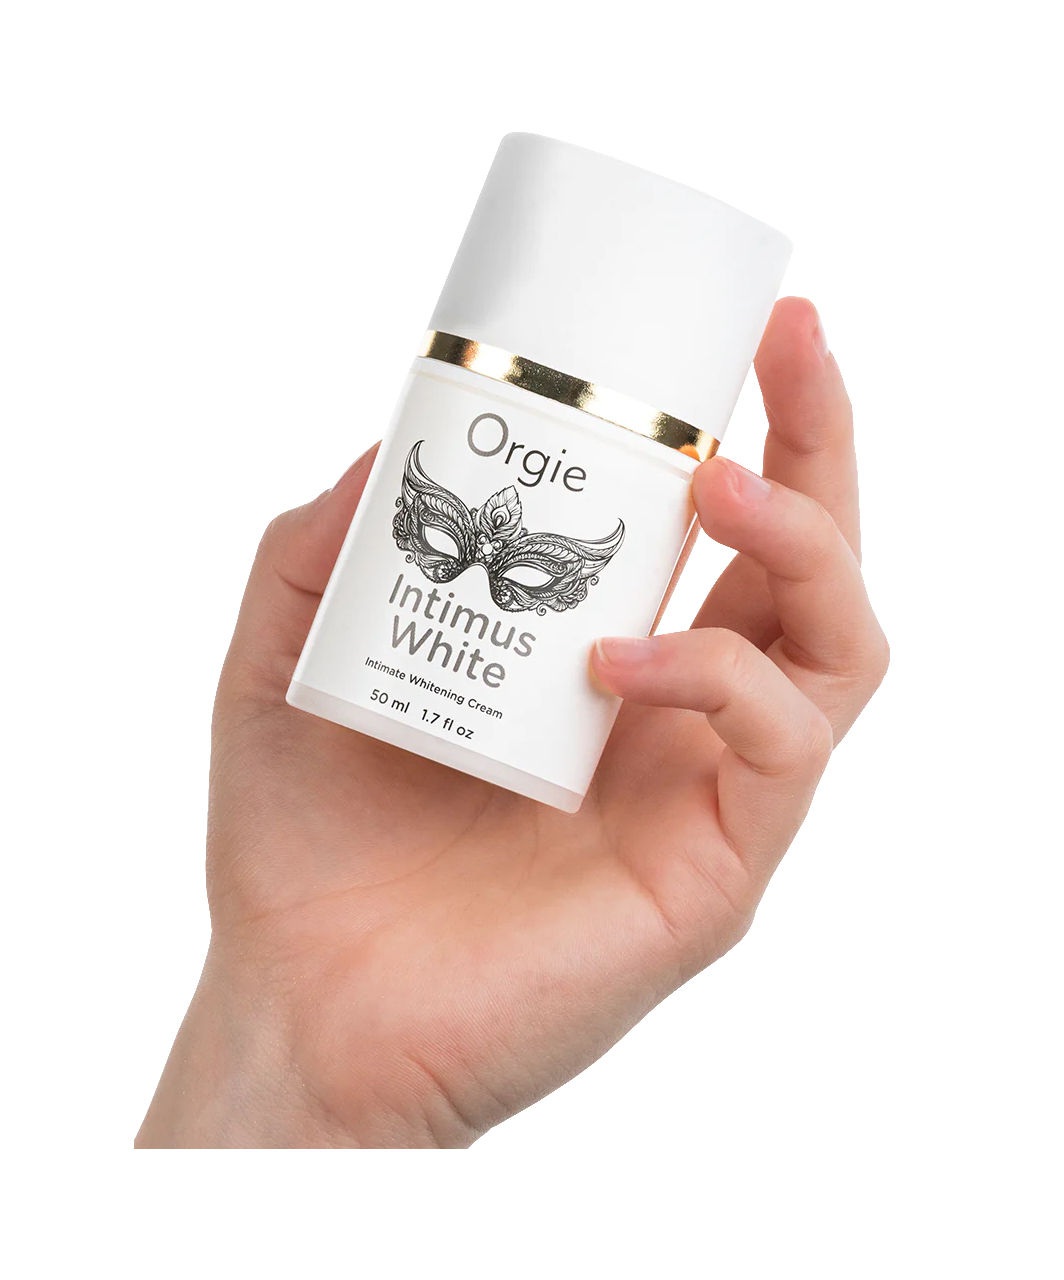 Orgie "Intimus White" intymių vietų balinamasis kremas (50 ml)